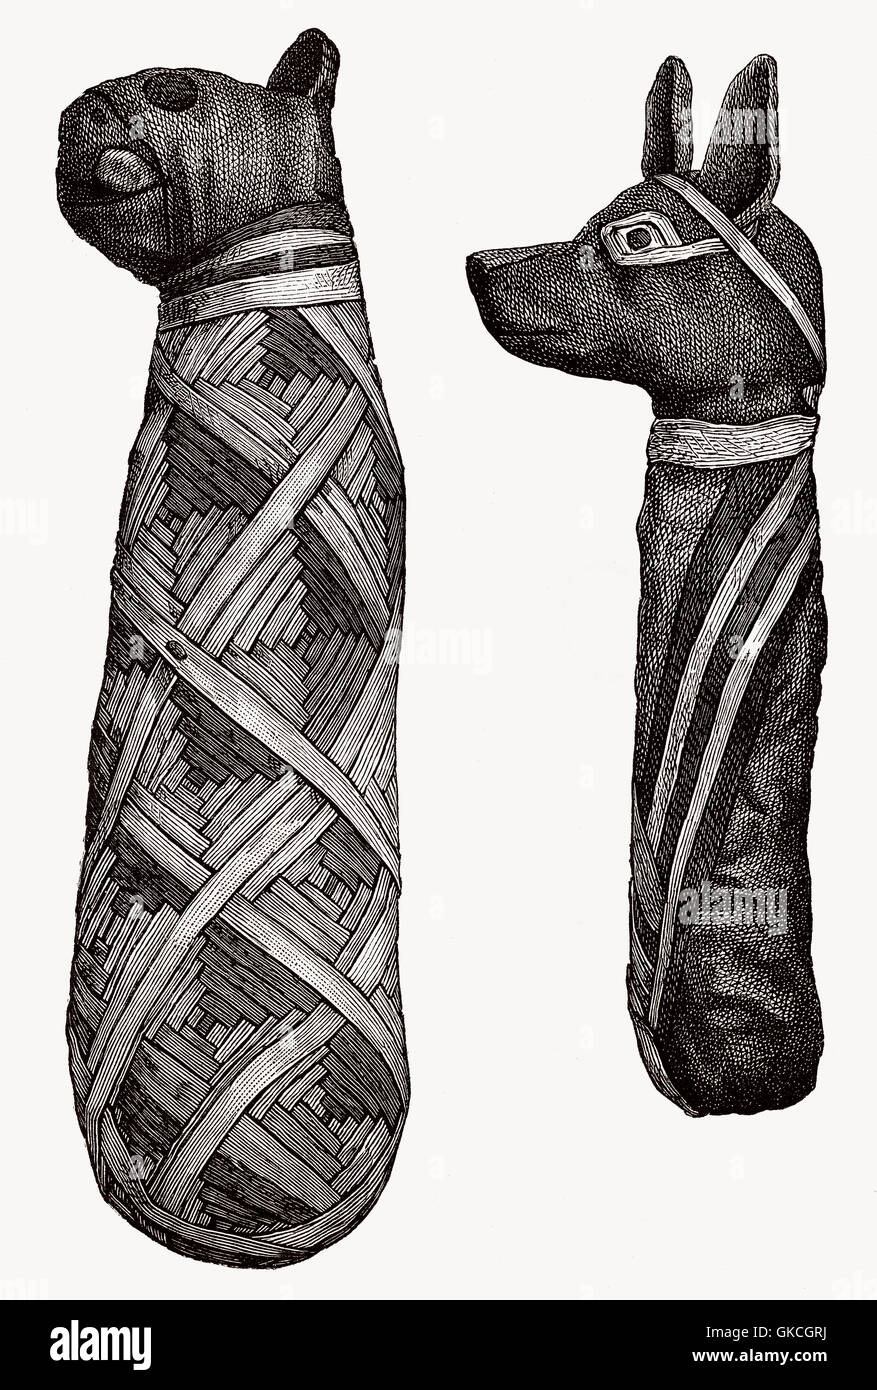 Les momies d'animaux, de l'Égypte ancienne, illustration du 19ème siècle Banque D'Images